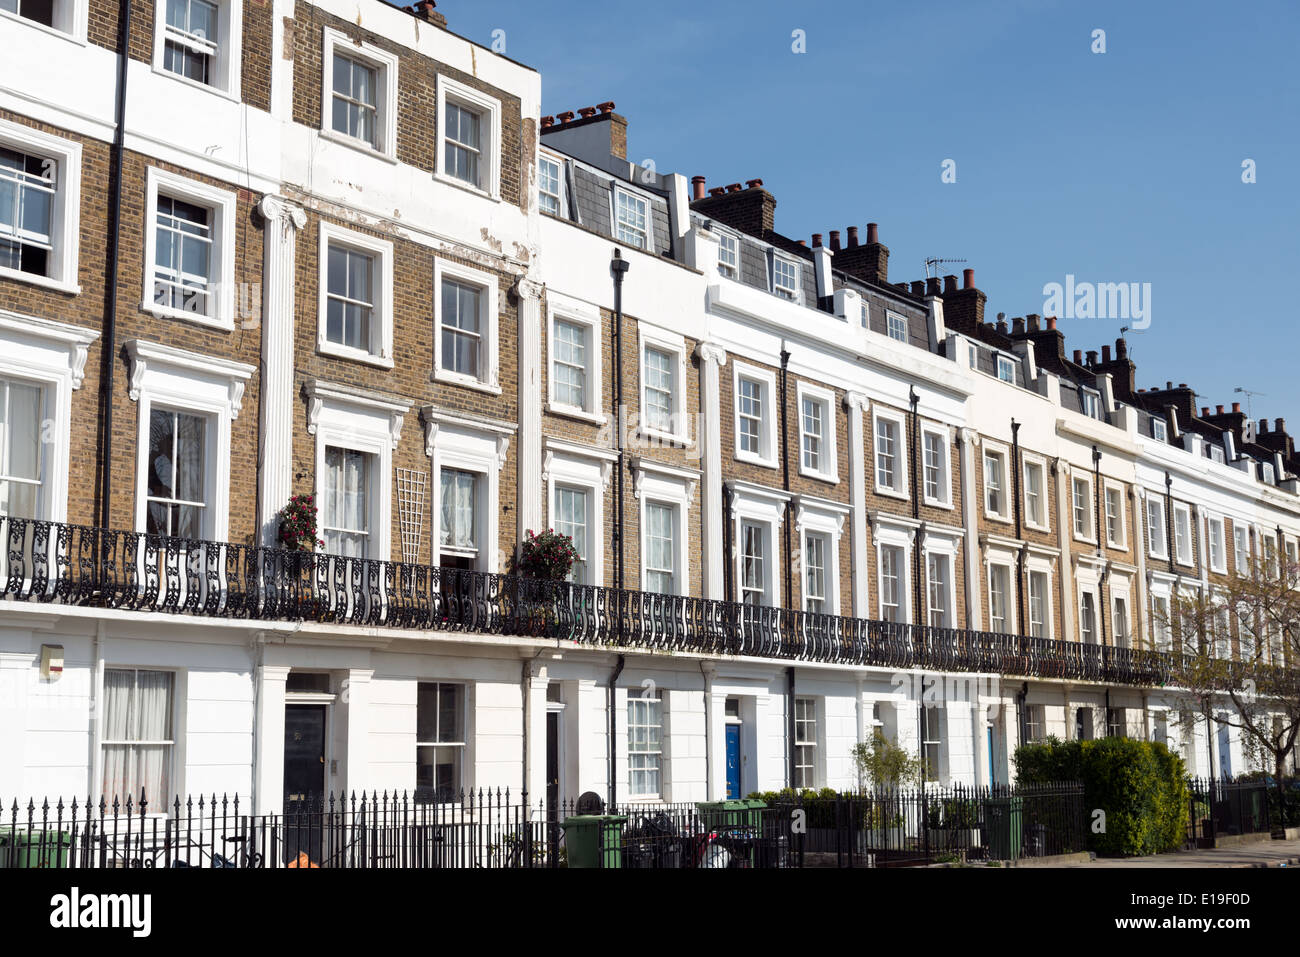 Zeile der georgischen Reihenhaus Häuser, Camden, Nord-London, England, UK Stockfoto